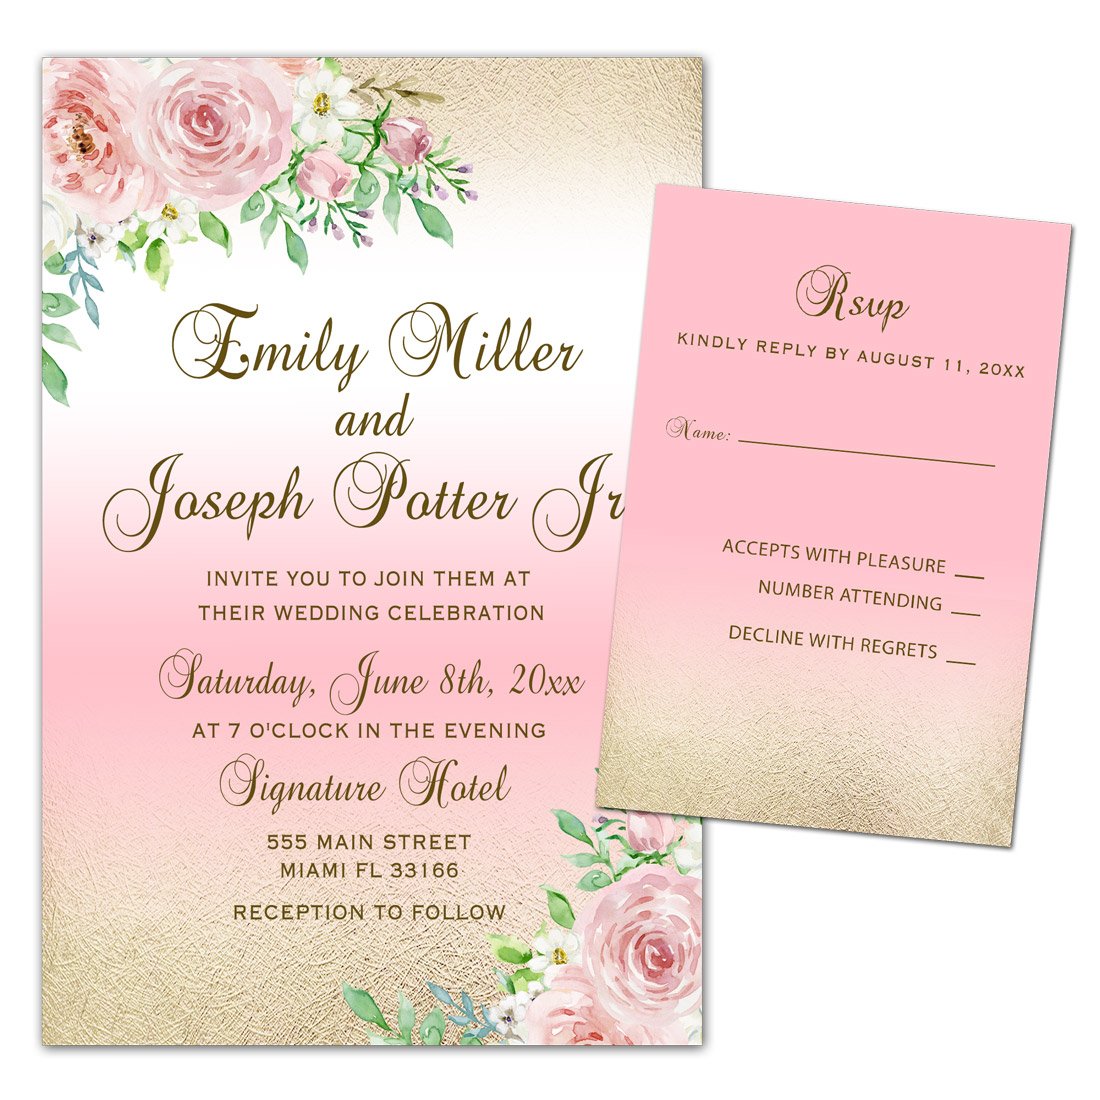 250 Wedding Invitations Gold Pink Roses Floral Design + Envelopes + Response Cards Set